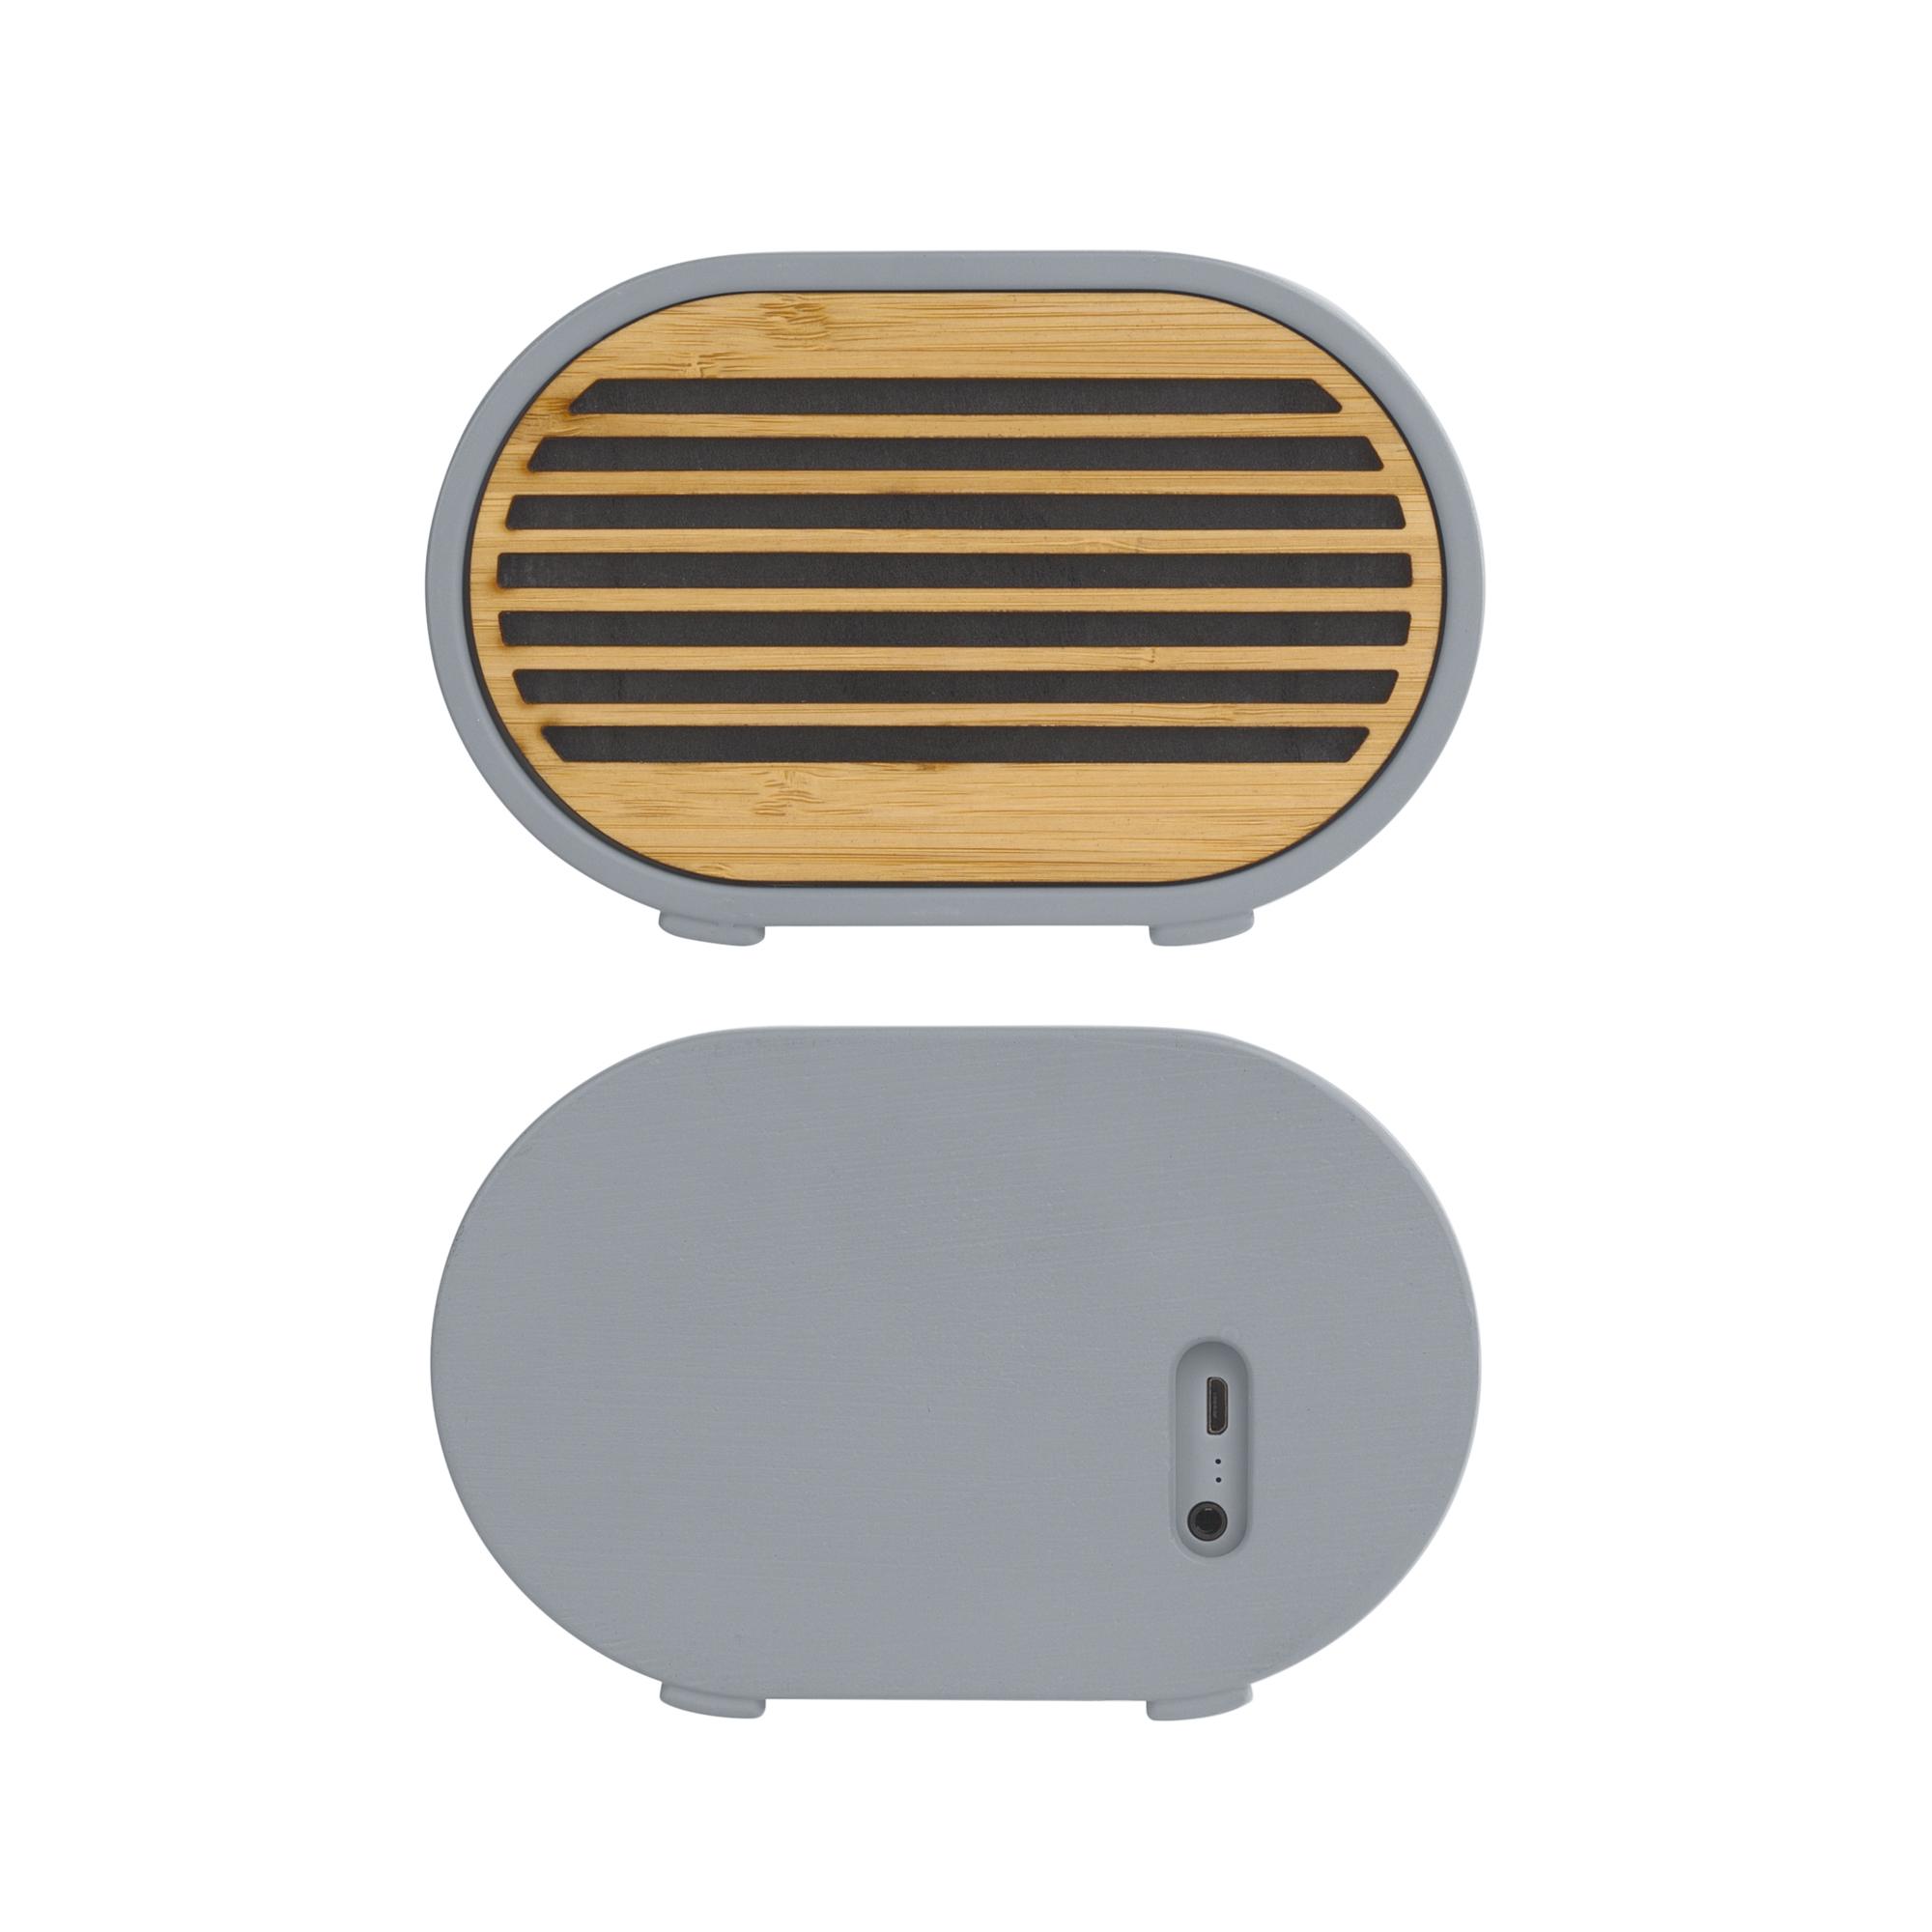 Bluetooth-колонка "Stonehenge" 5Вт с беспроводным зарядным устройством, камень/бамбук, цвет серый/бежевый, фото 2